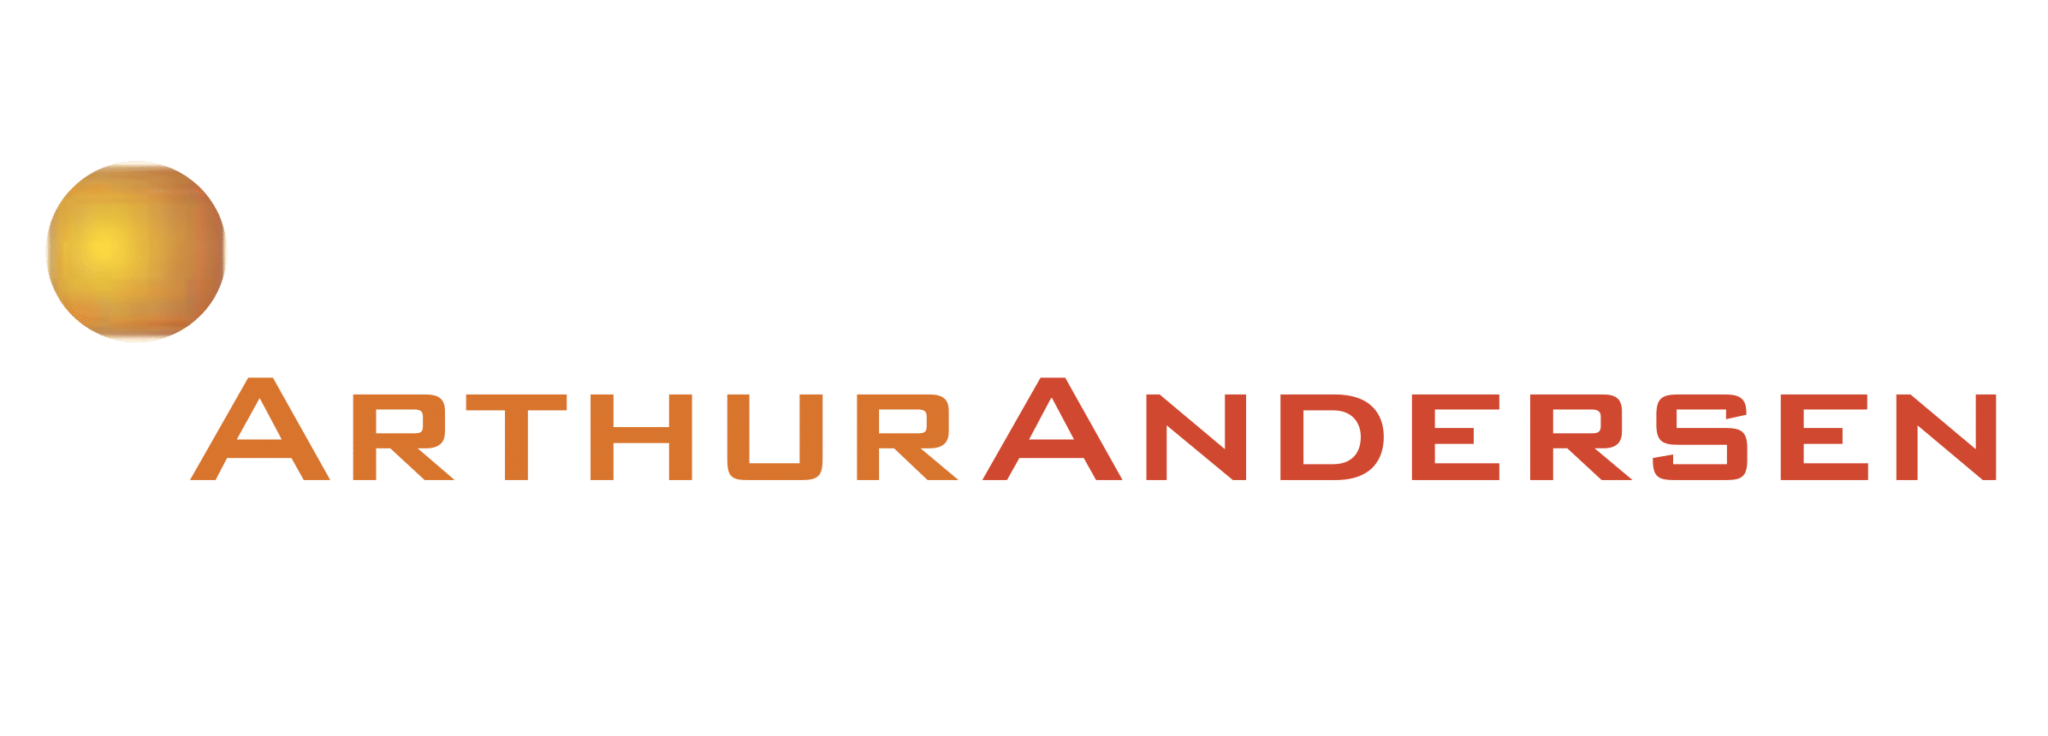 Arthur Andersen Logo